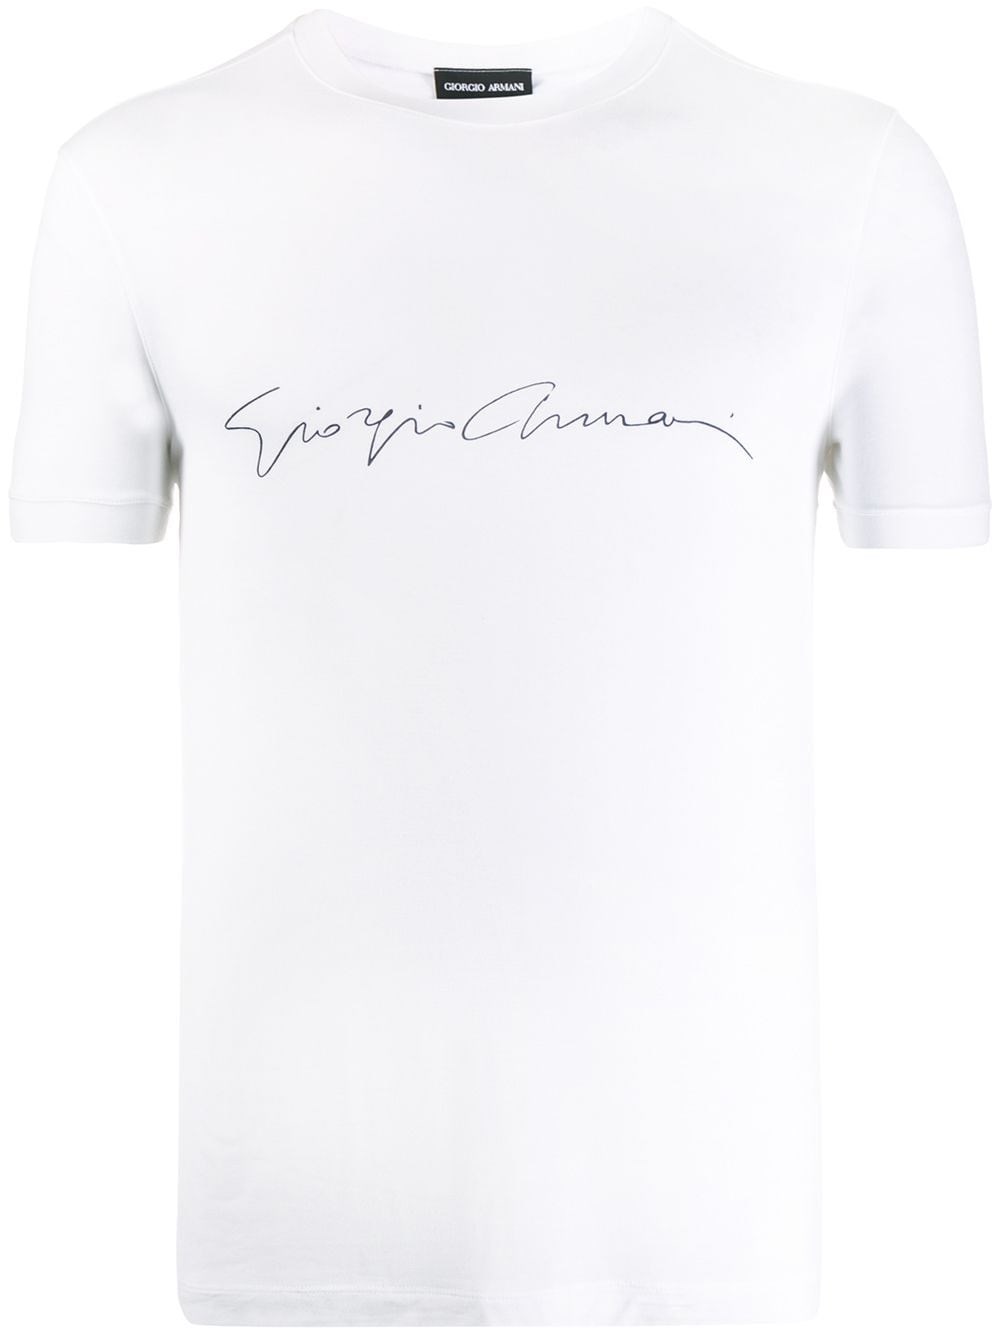 Giorgio Armani T-shirt In White